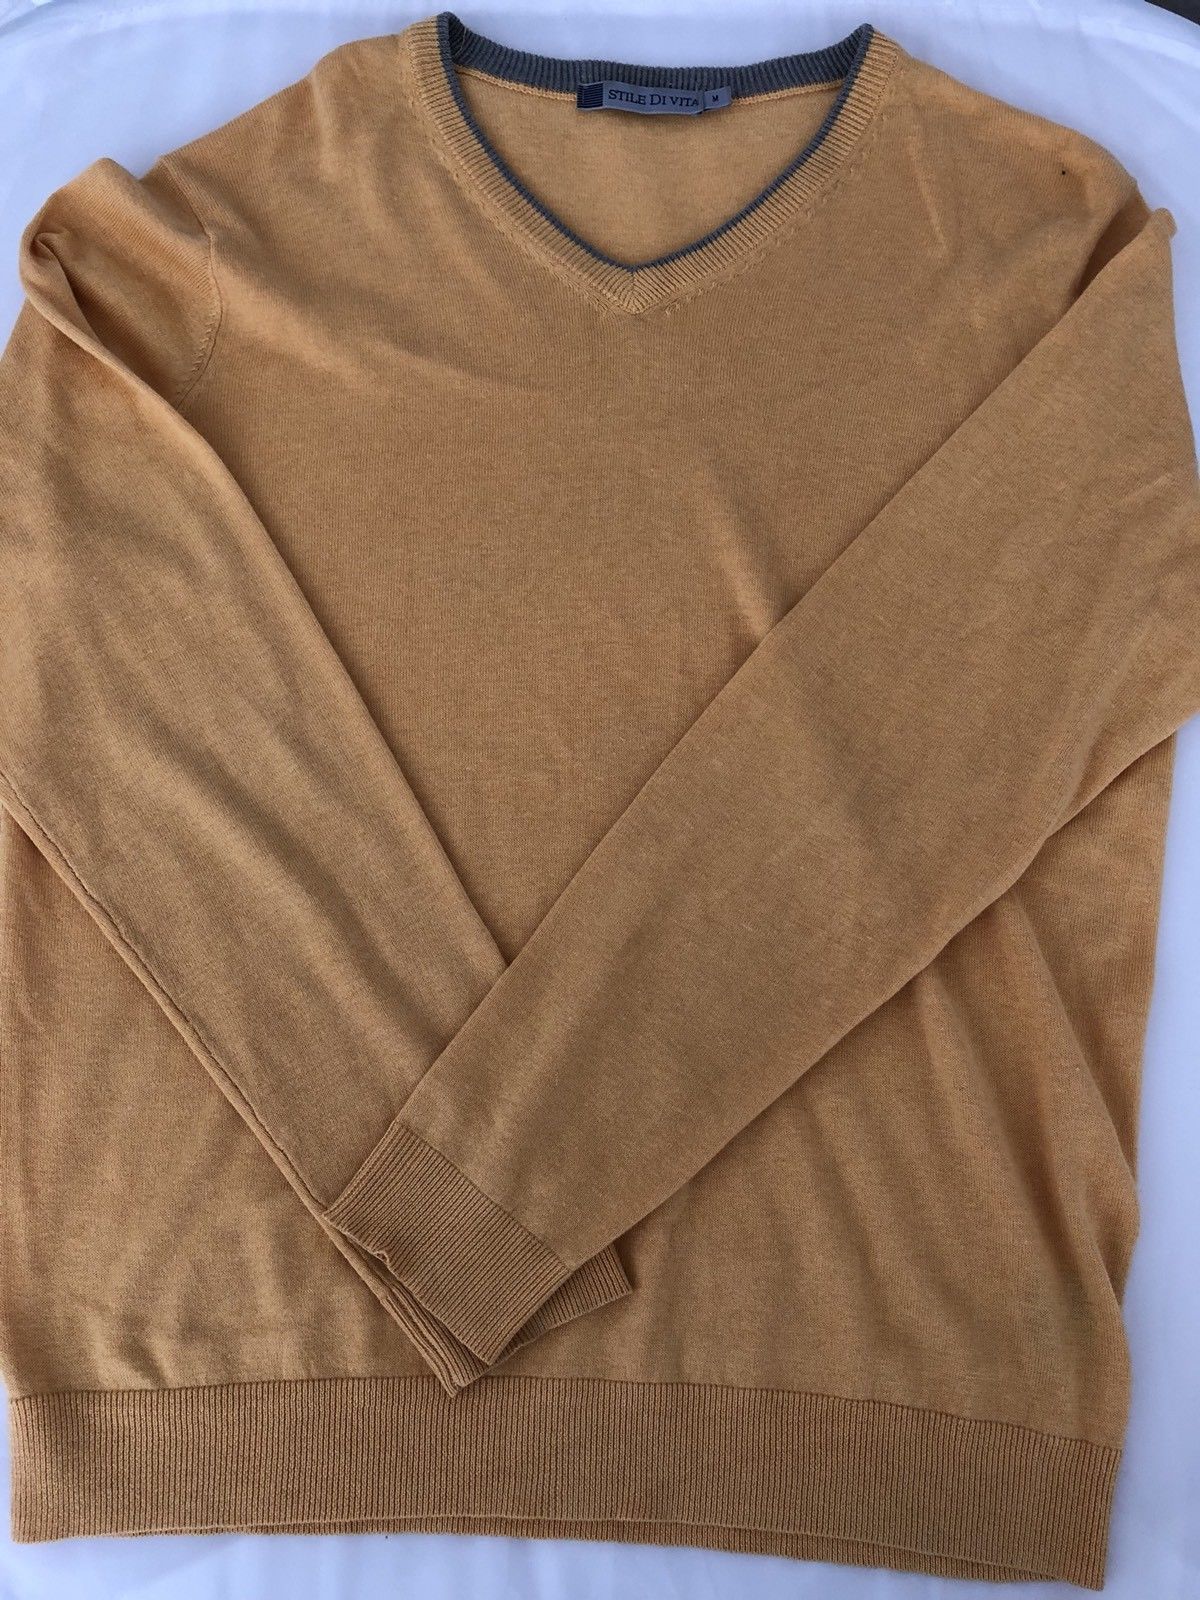 Stile Di Vita Men's V-Neck Yellow Sweater Size Medium Silk/Cotton - BAYSUPERSTORE